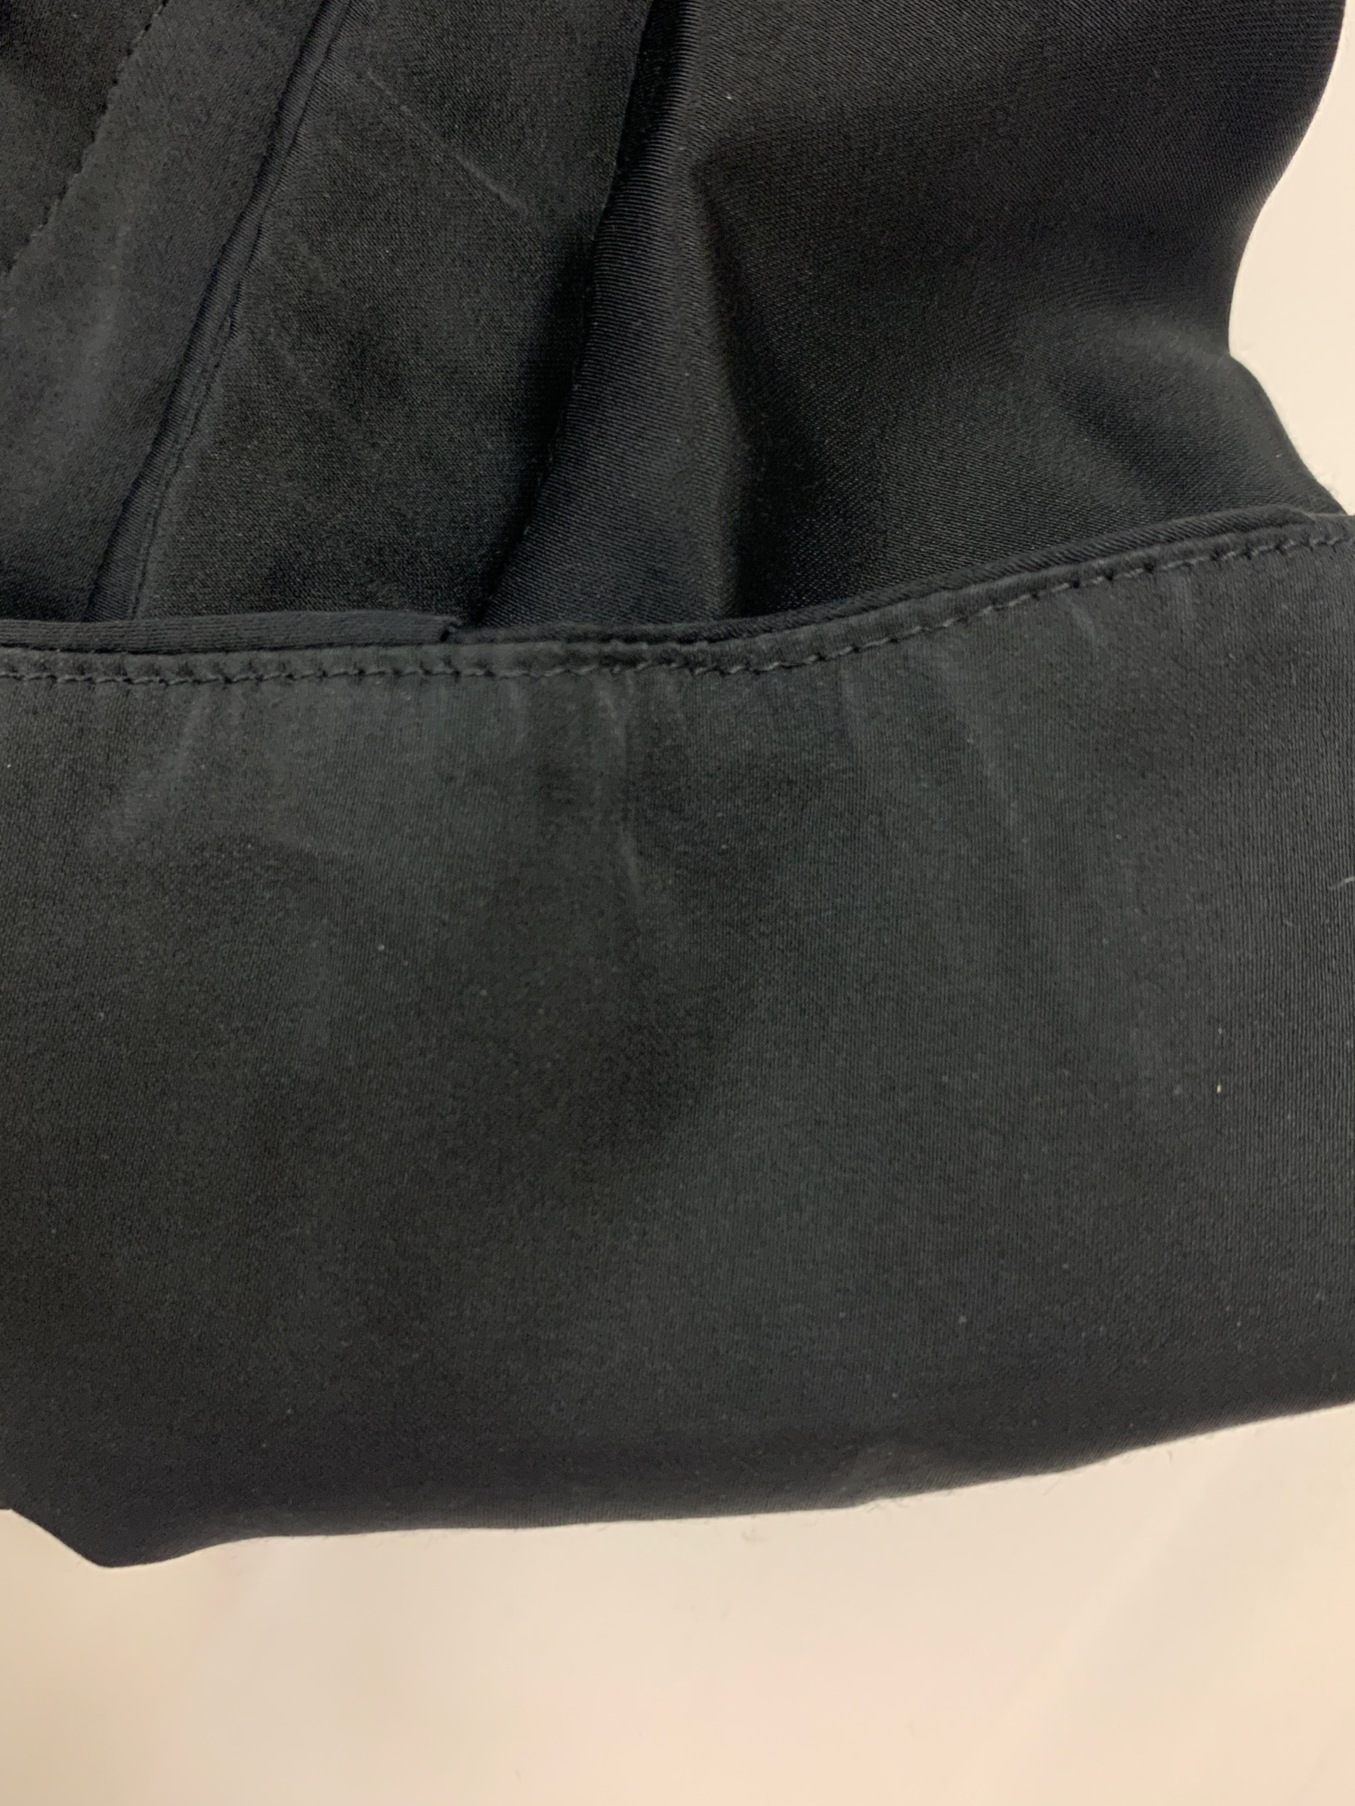 TOGA PULLA (トーガ プルラ) ACETATE SATIN DRESS ブラック サイズ:36